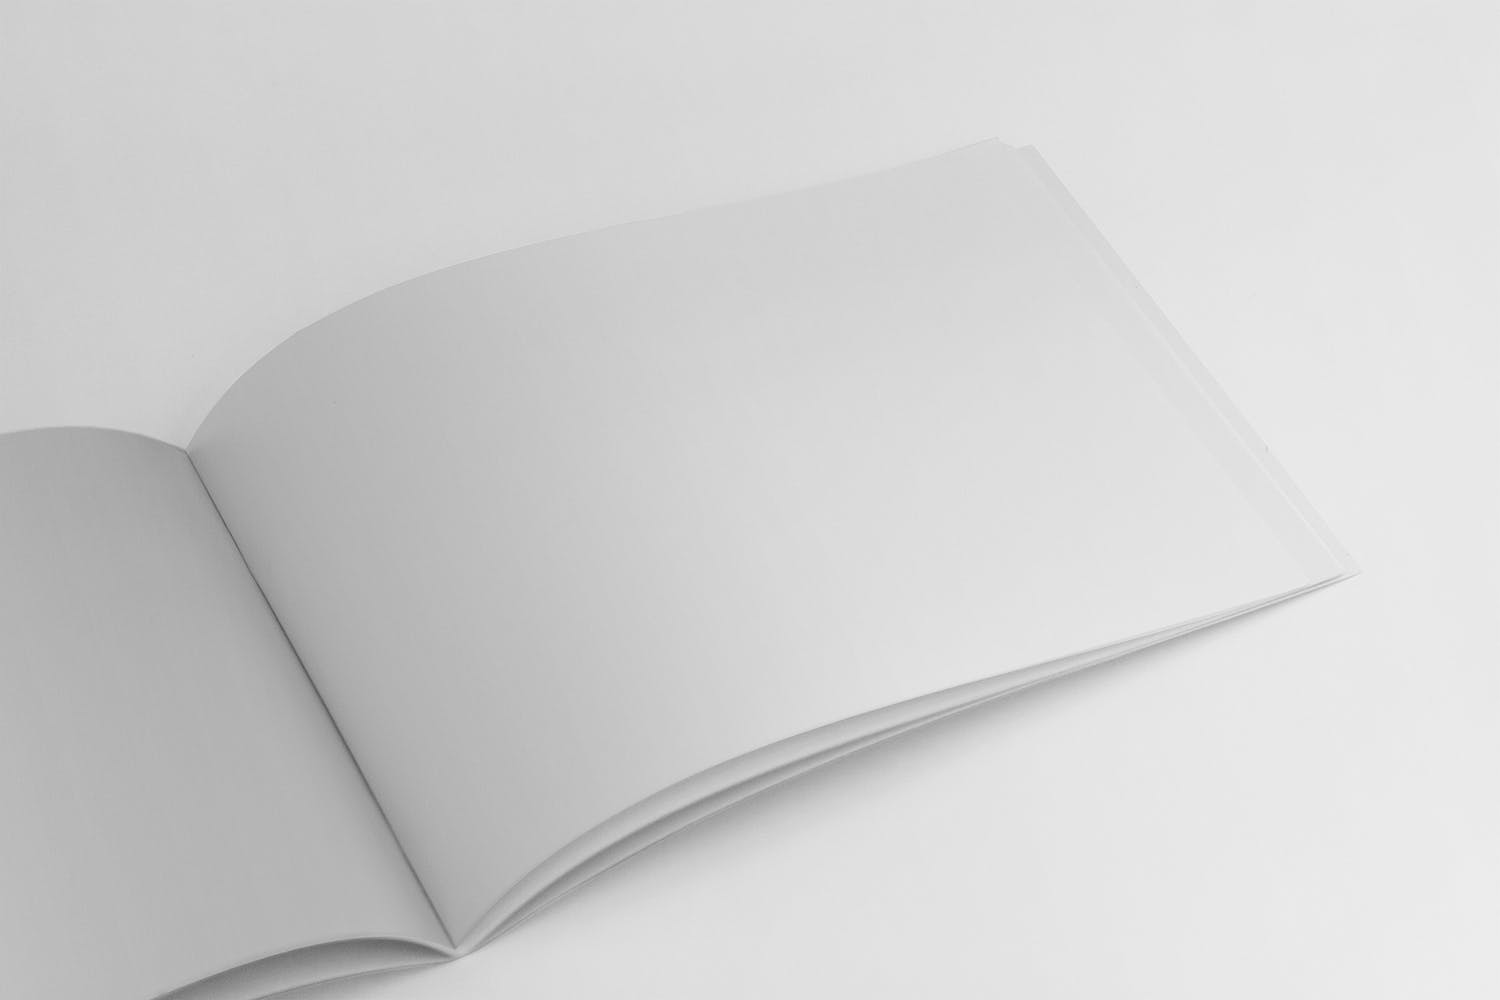 横版设计企业&品牌宣传册右侧特写图样机第一素材精选模板 US Half Letter Brochure Mockup Closeup Right Page插图(1)